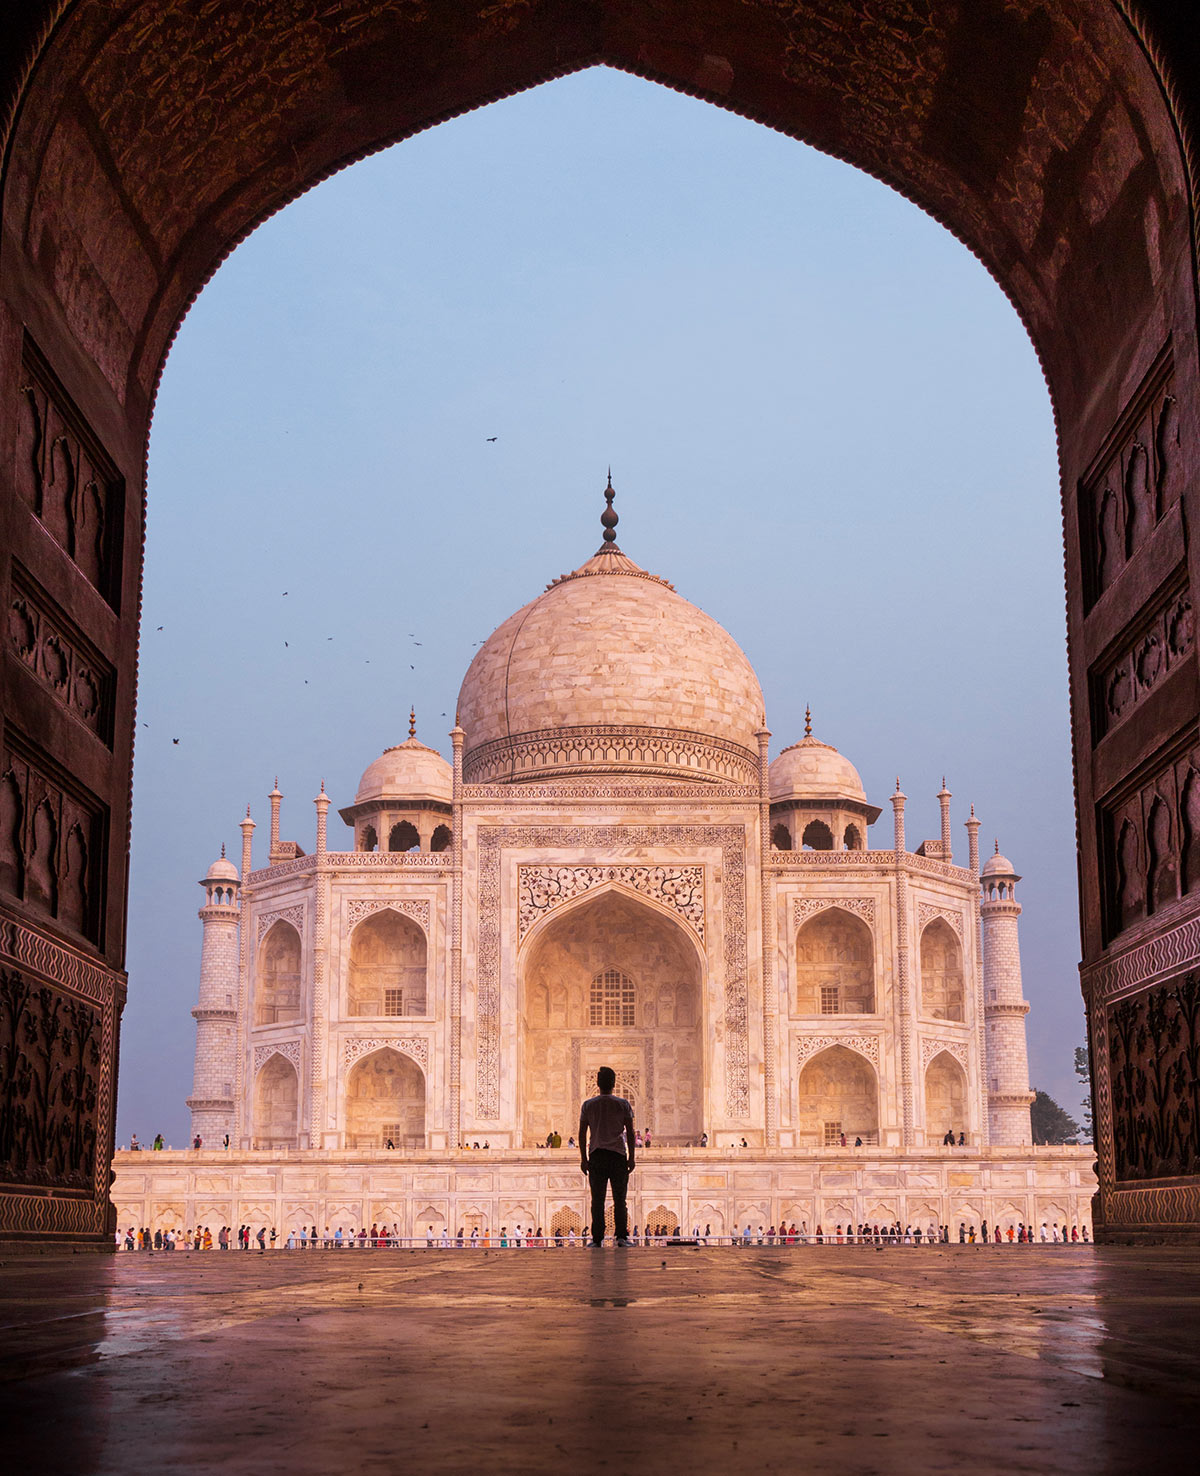 Mosquée Kau Ban, Taj Mahal, Agra, Inde / Kau Ban Mosque, Taj Mahal, Agra, India